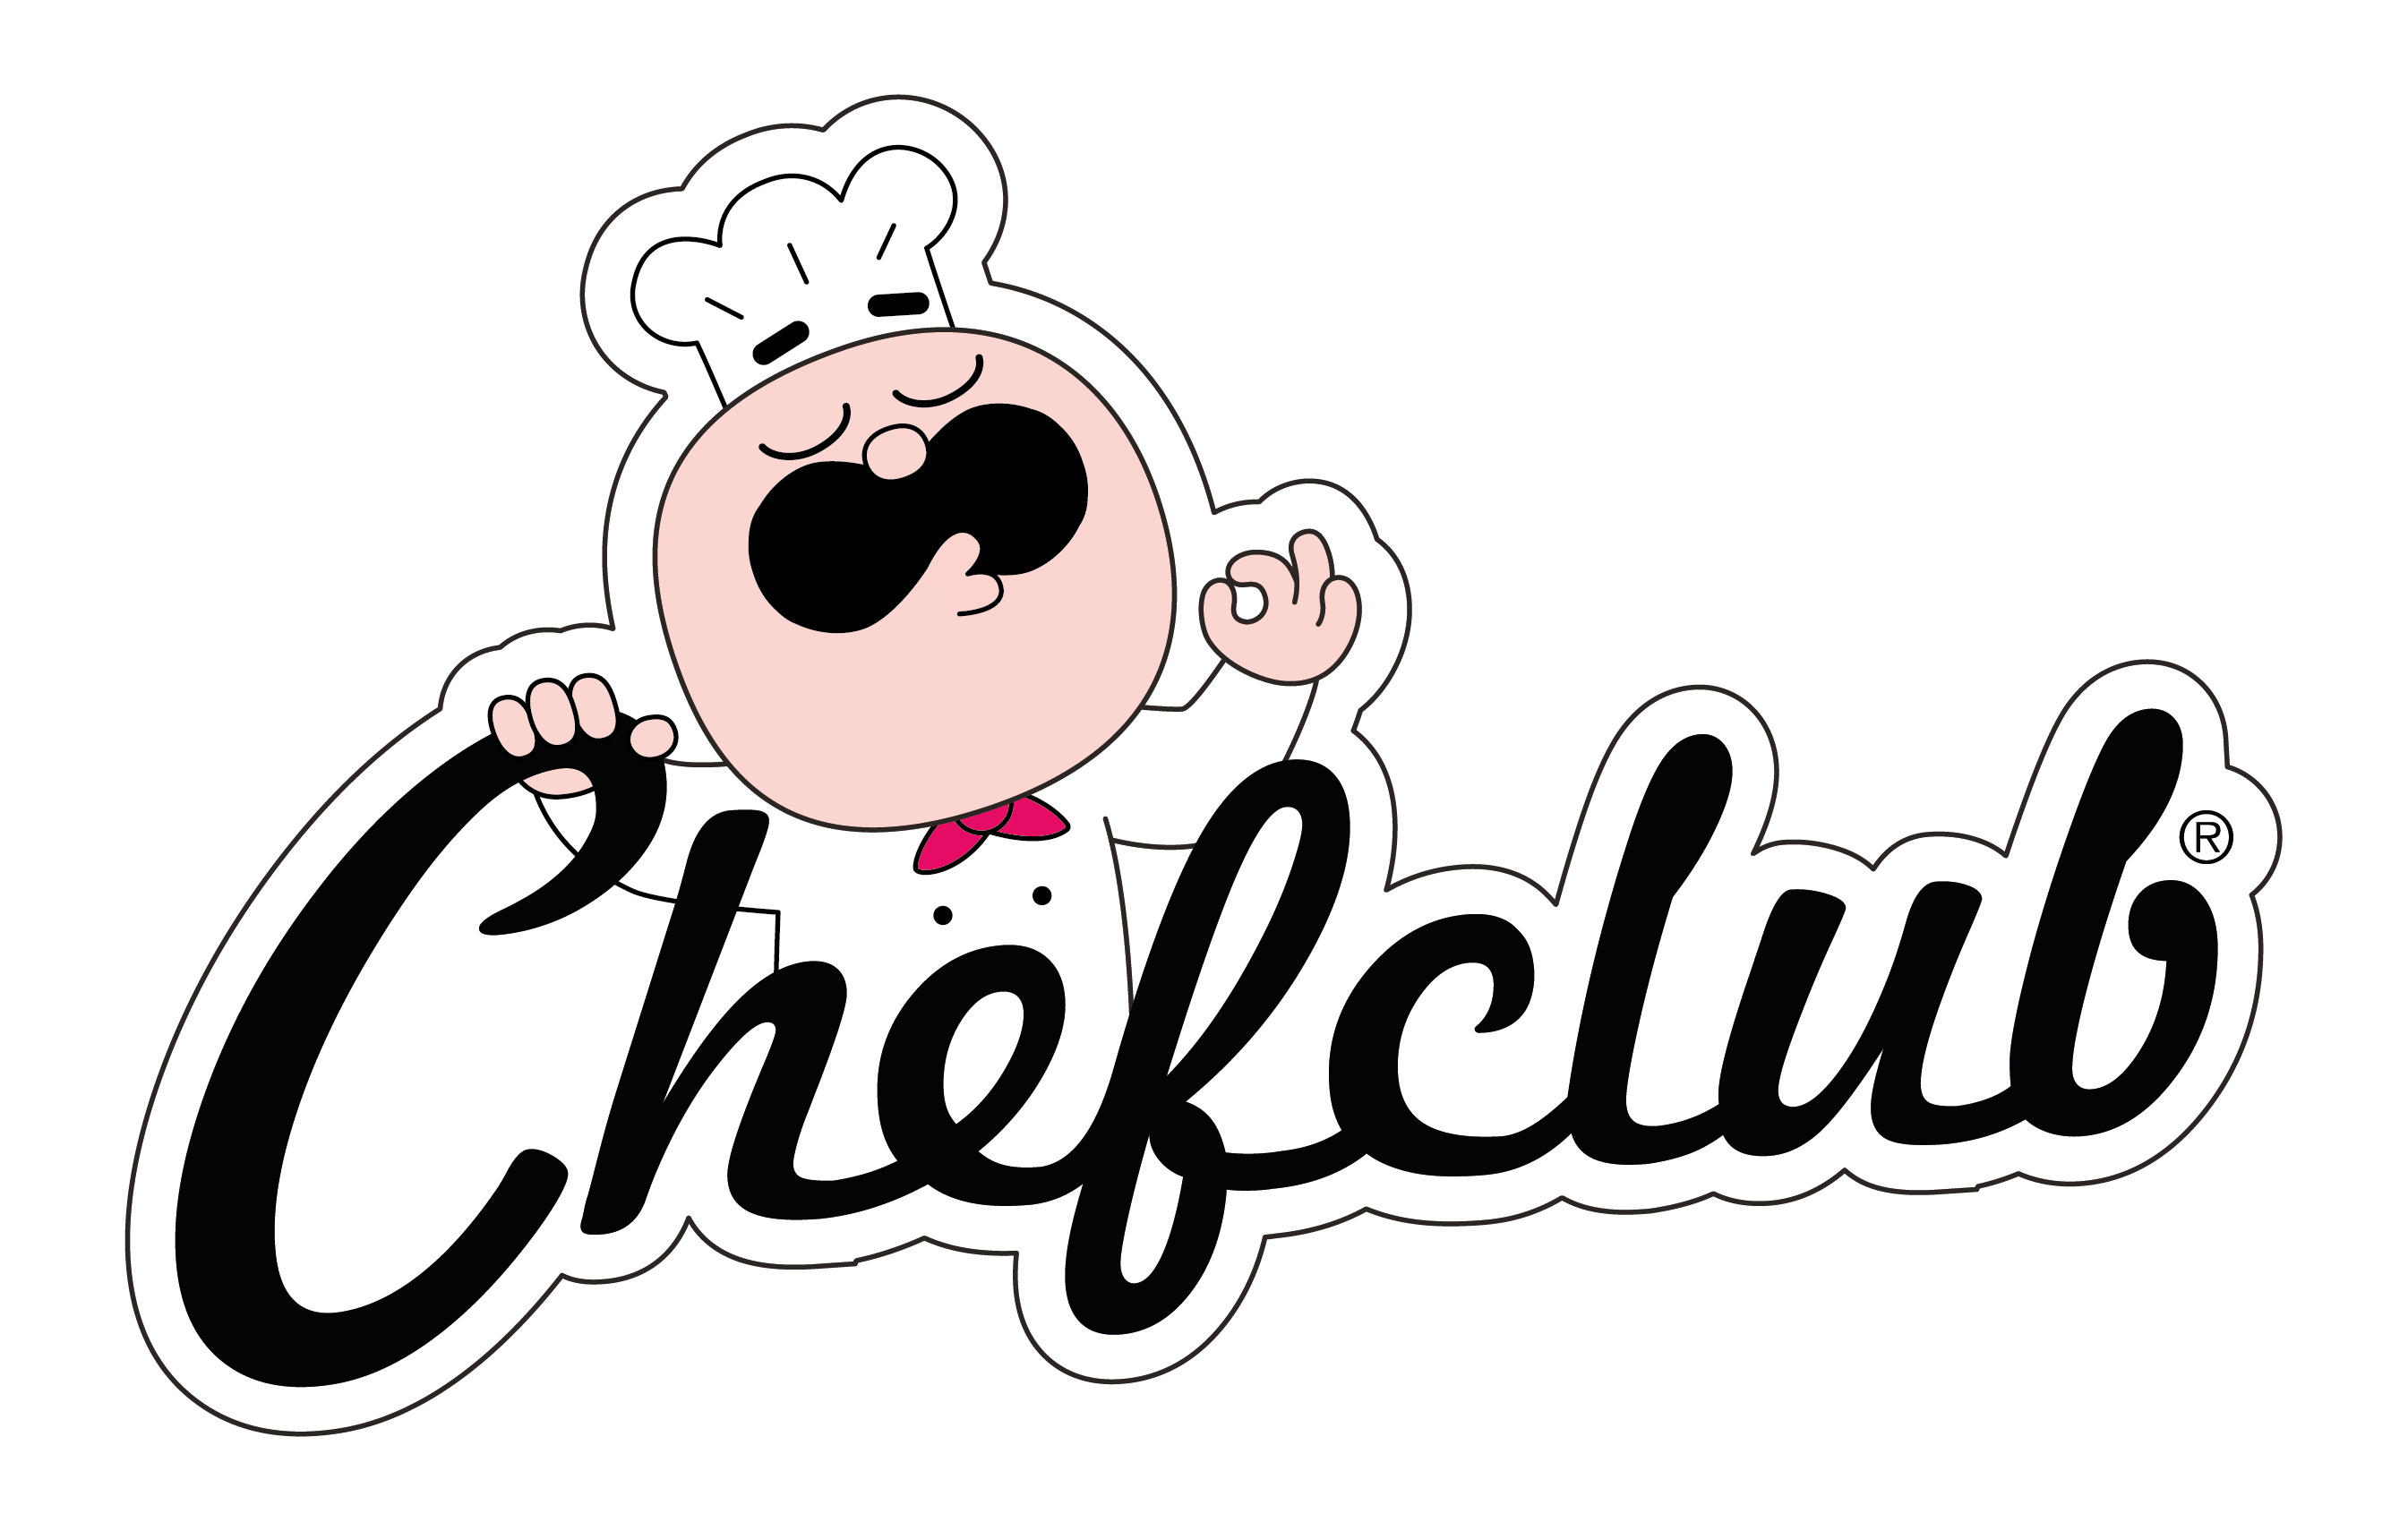 ChefClub